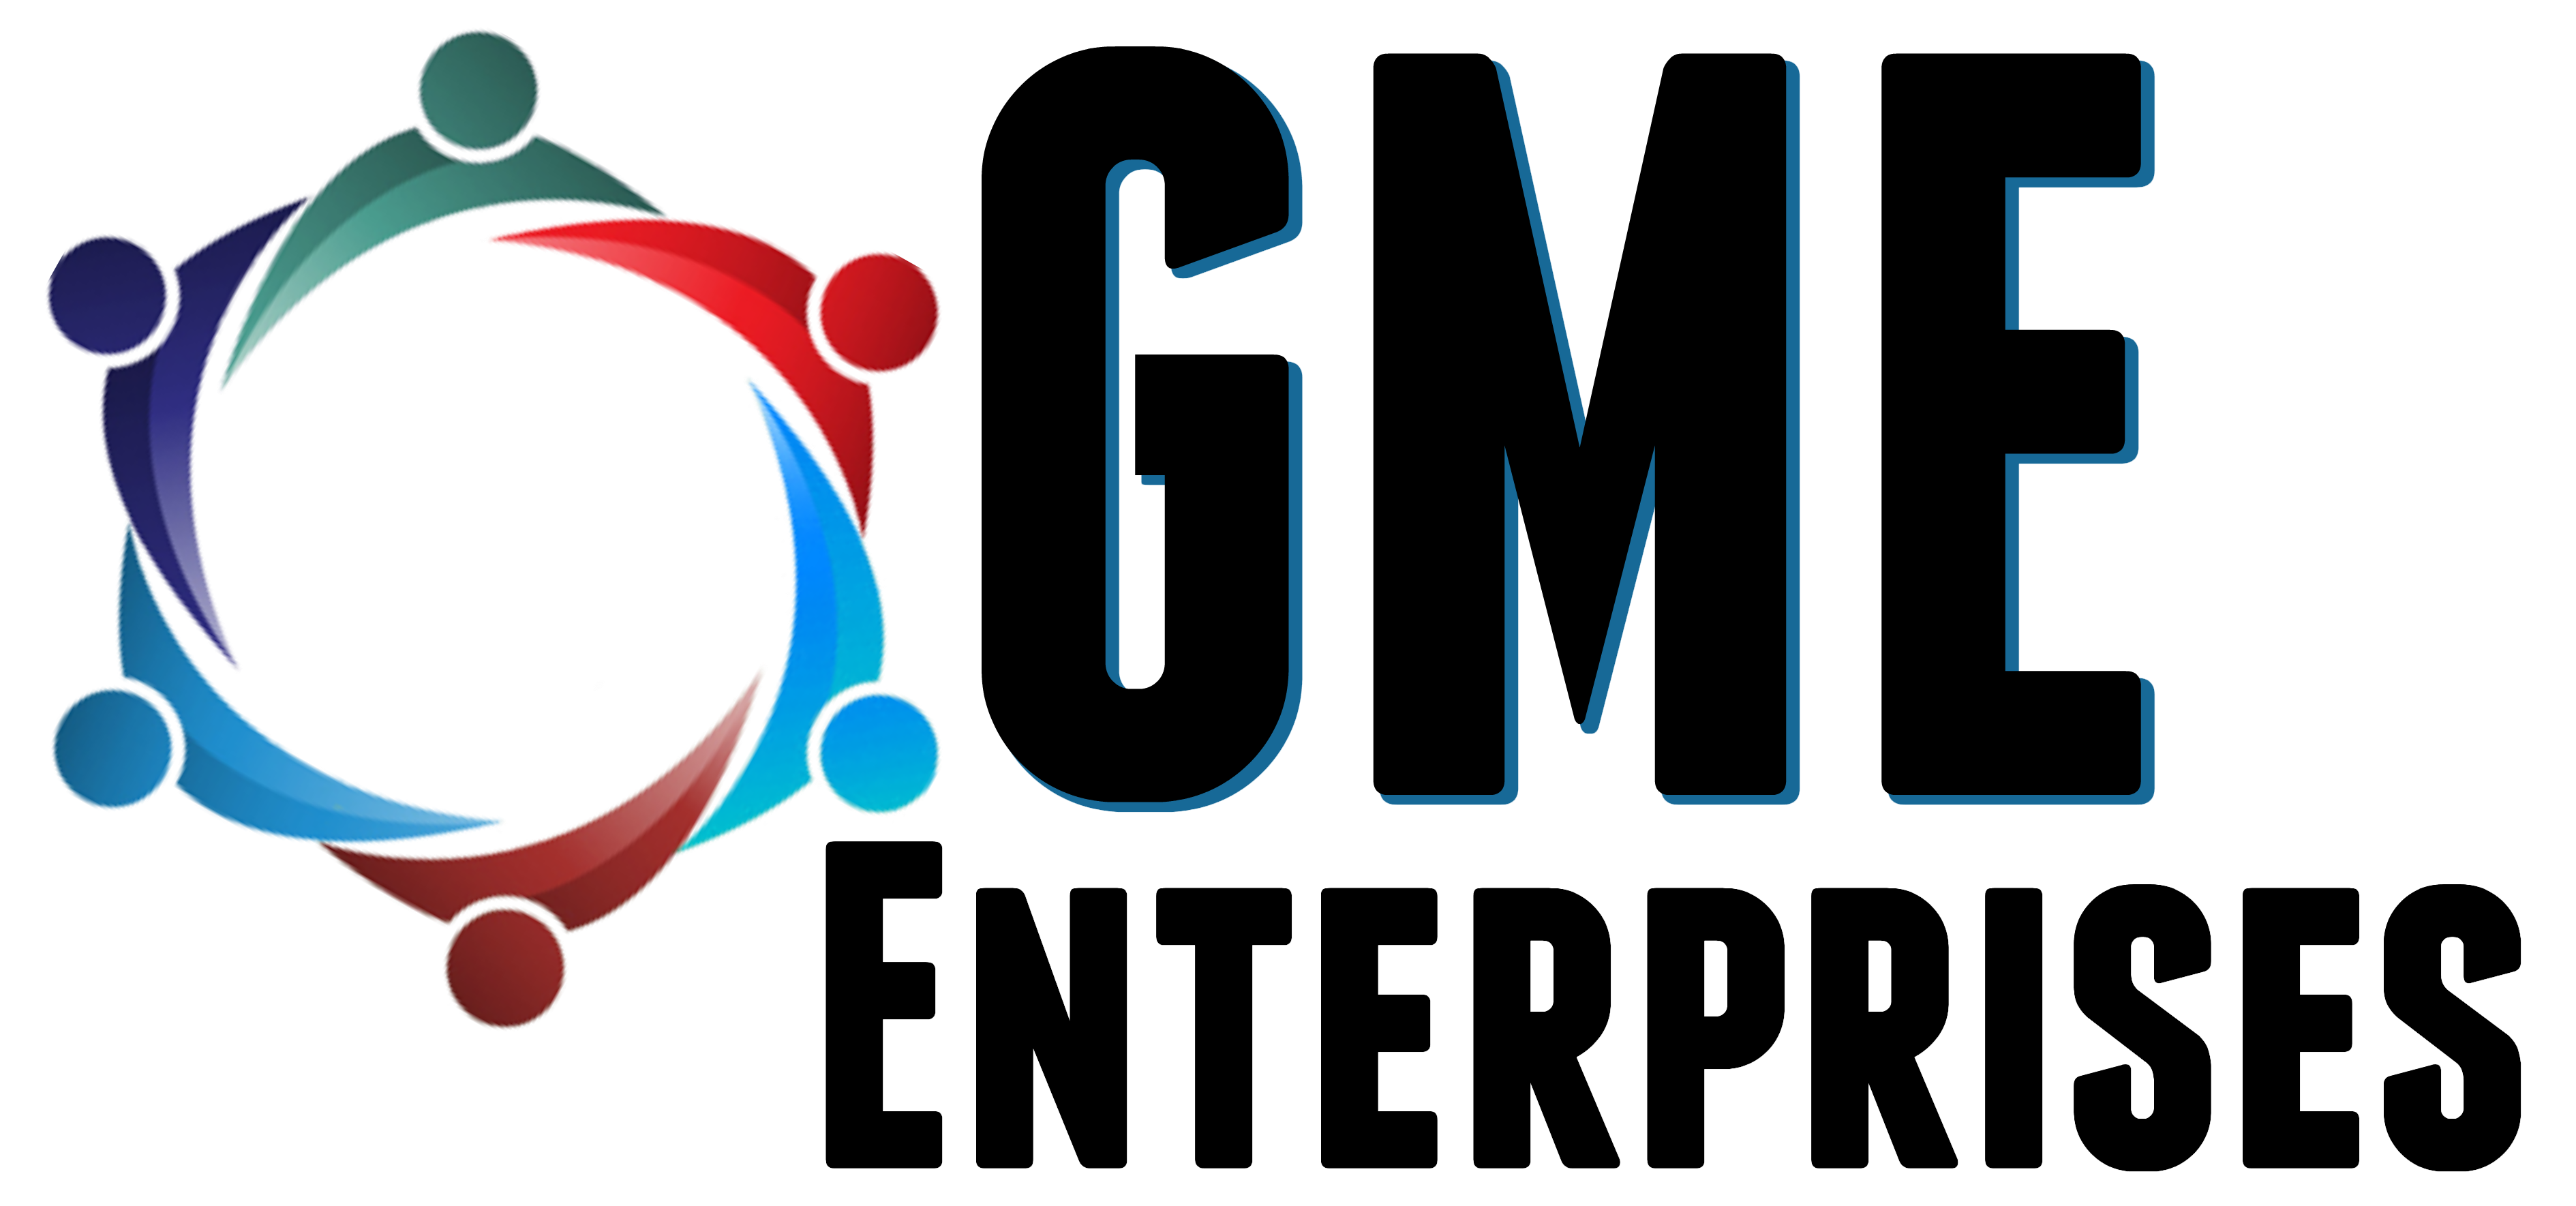 About Us - GME Enterprises